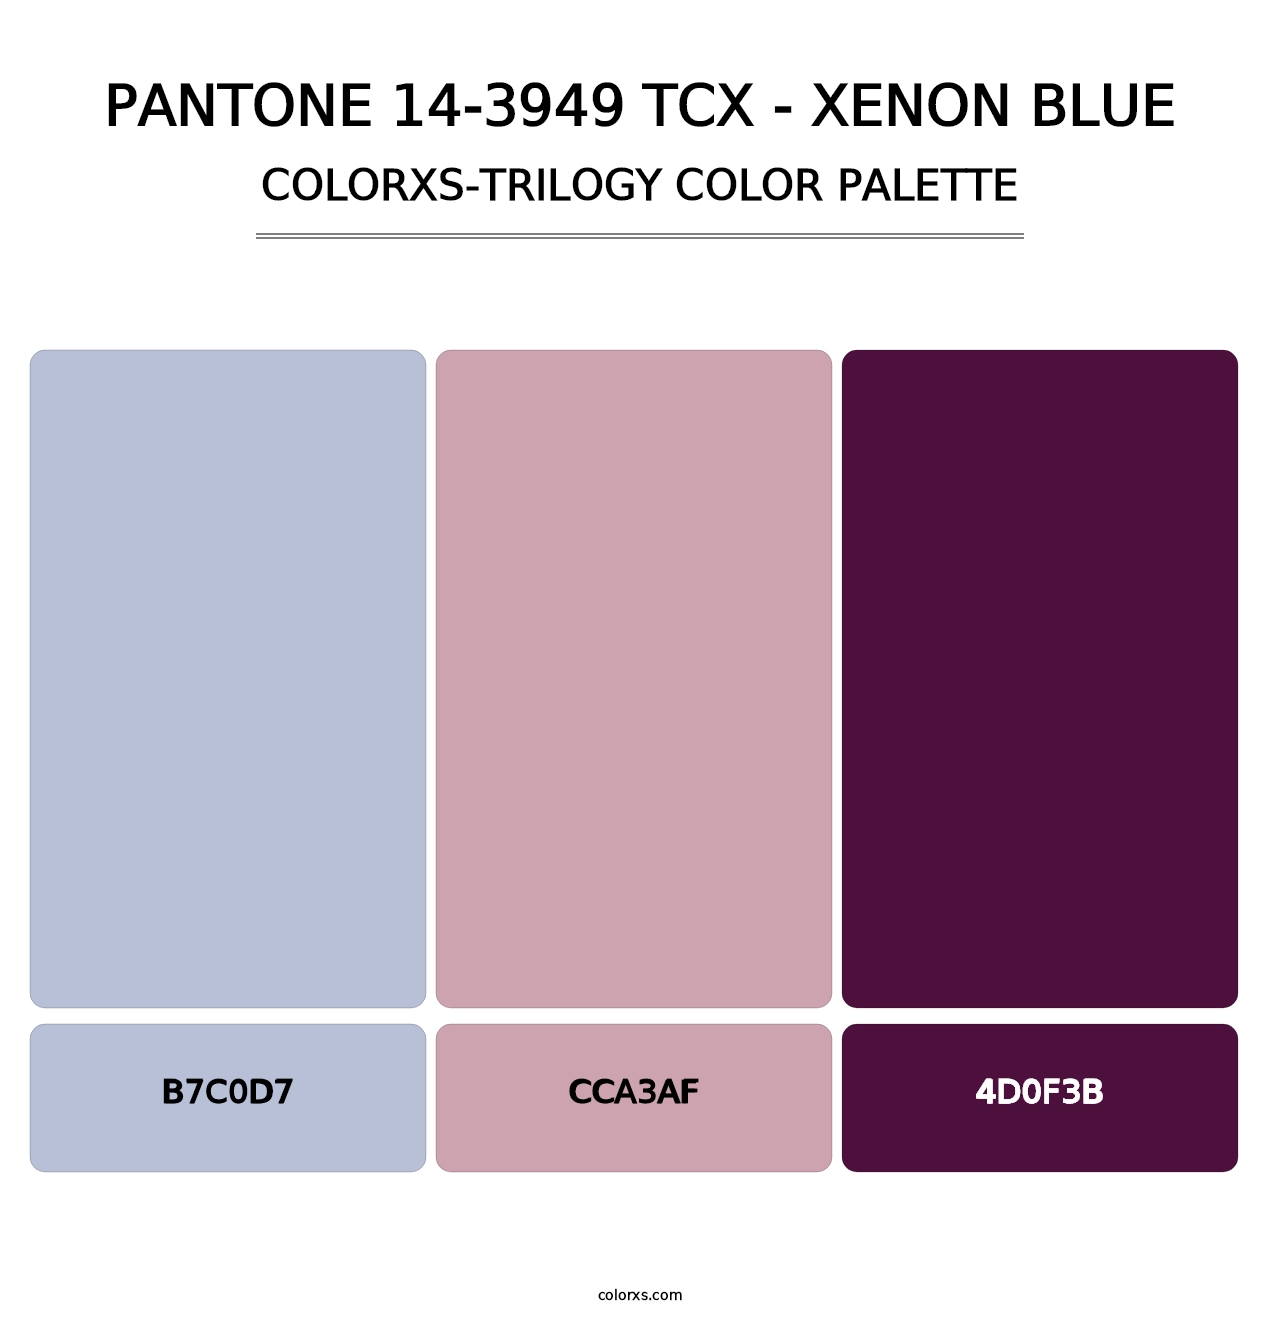 PANTONE 14-3949 TCX - Xenon Blue - Colorxs Trilogy Palette